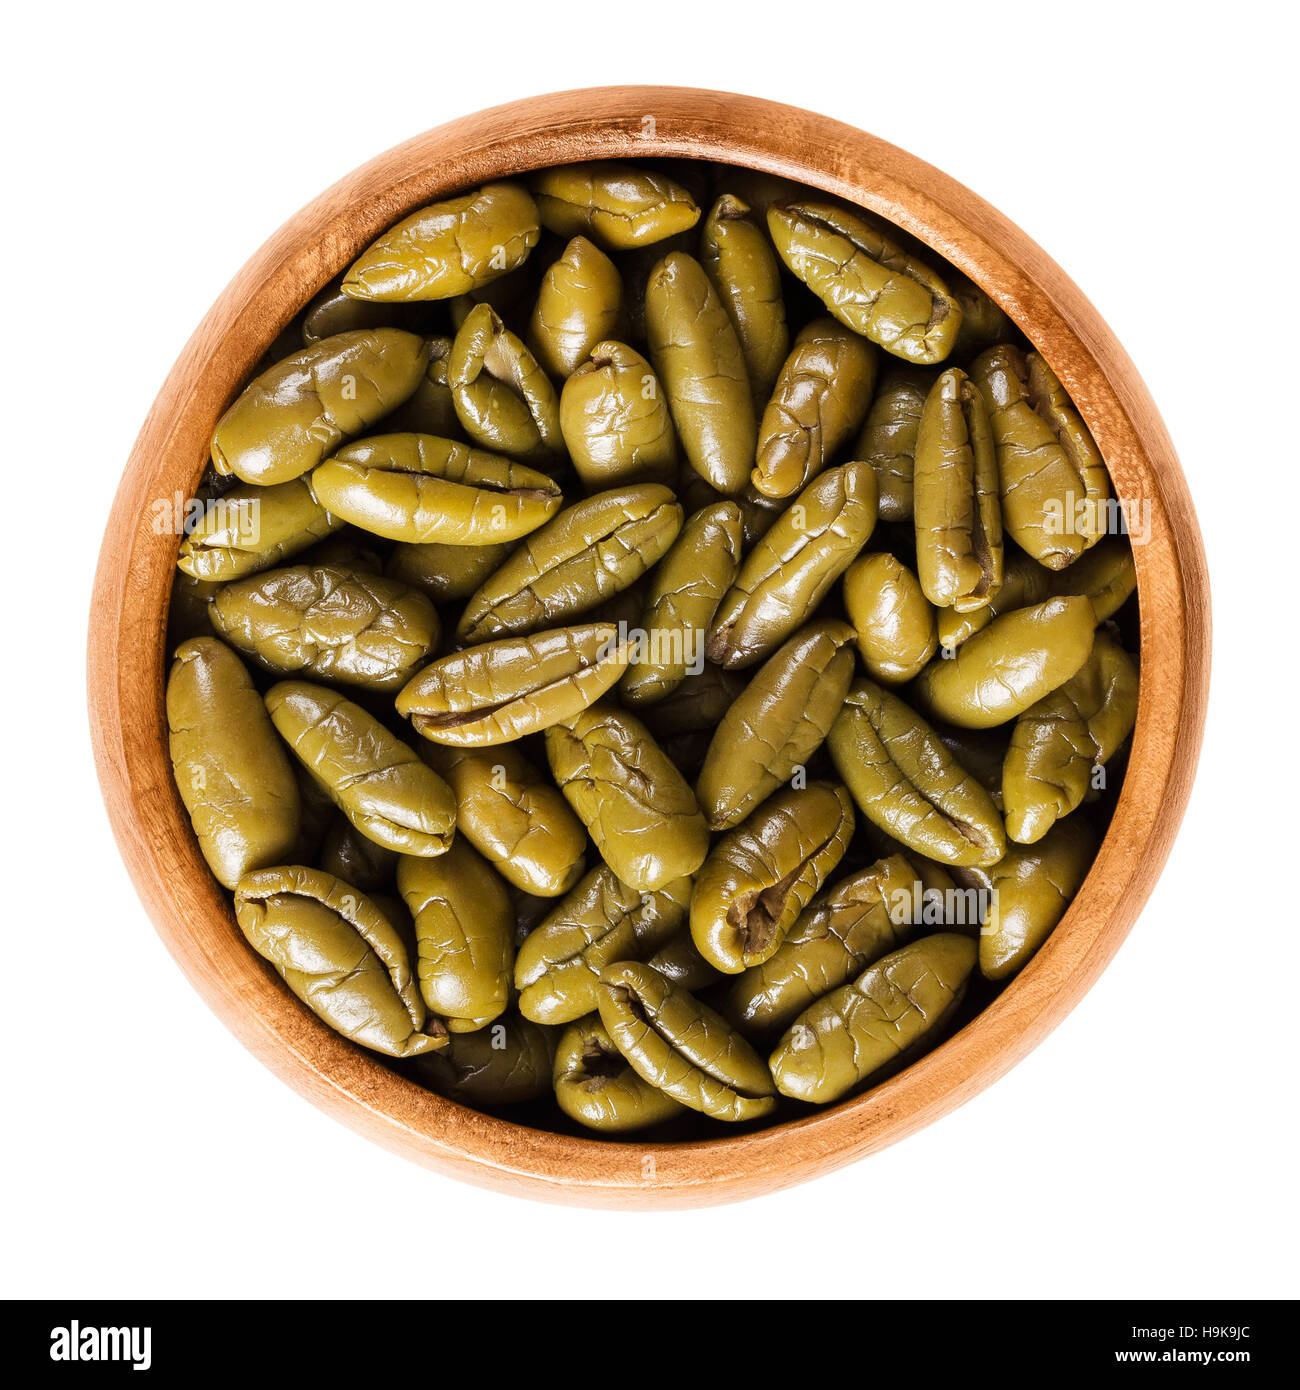 Les moitiés d'olive verte séchée dans un bol en bois. La moitié des olives de table, les fruits mûrs de l'Olea europaea. Macro photo alimentaire isolé. Banque D'Images